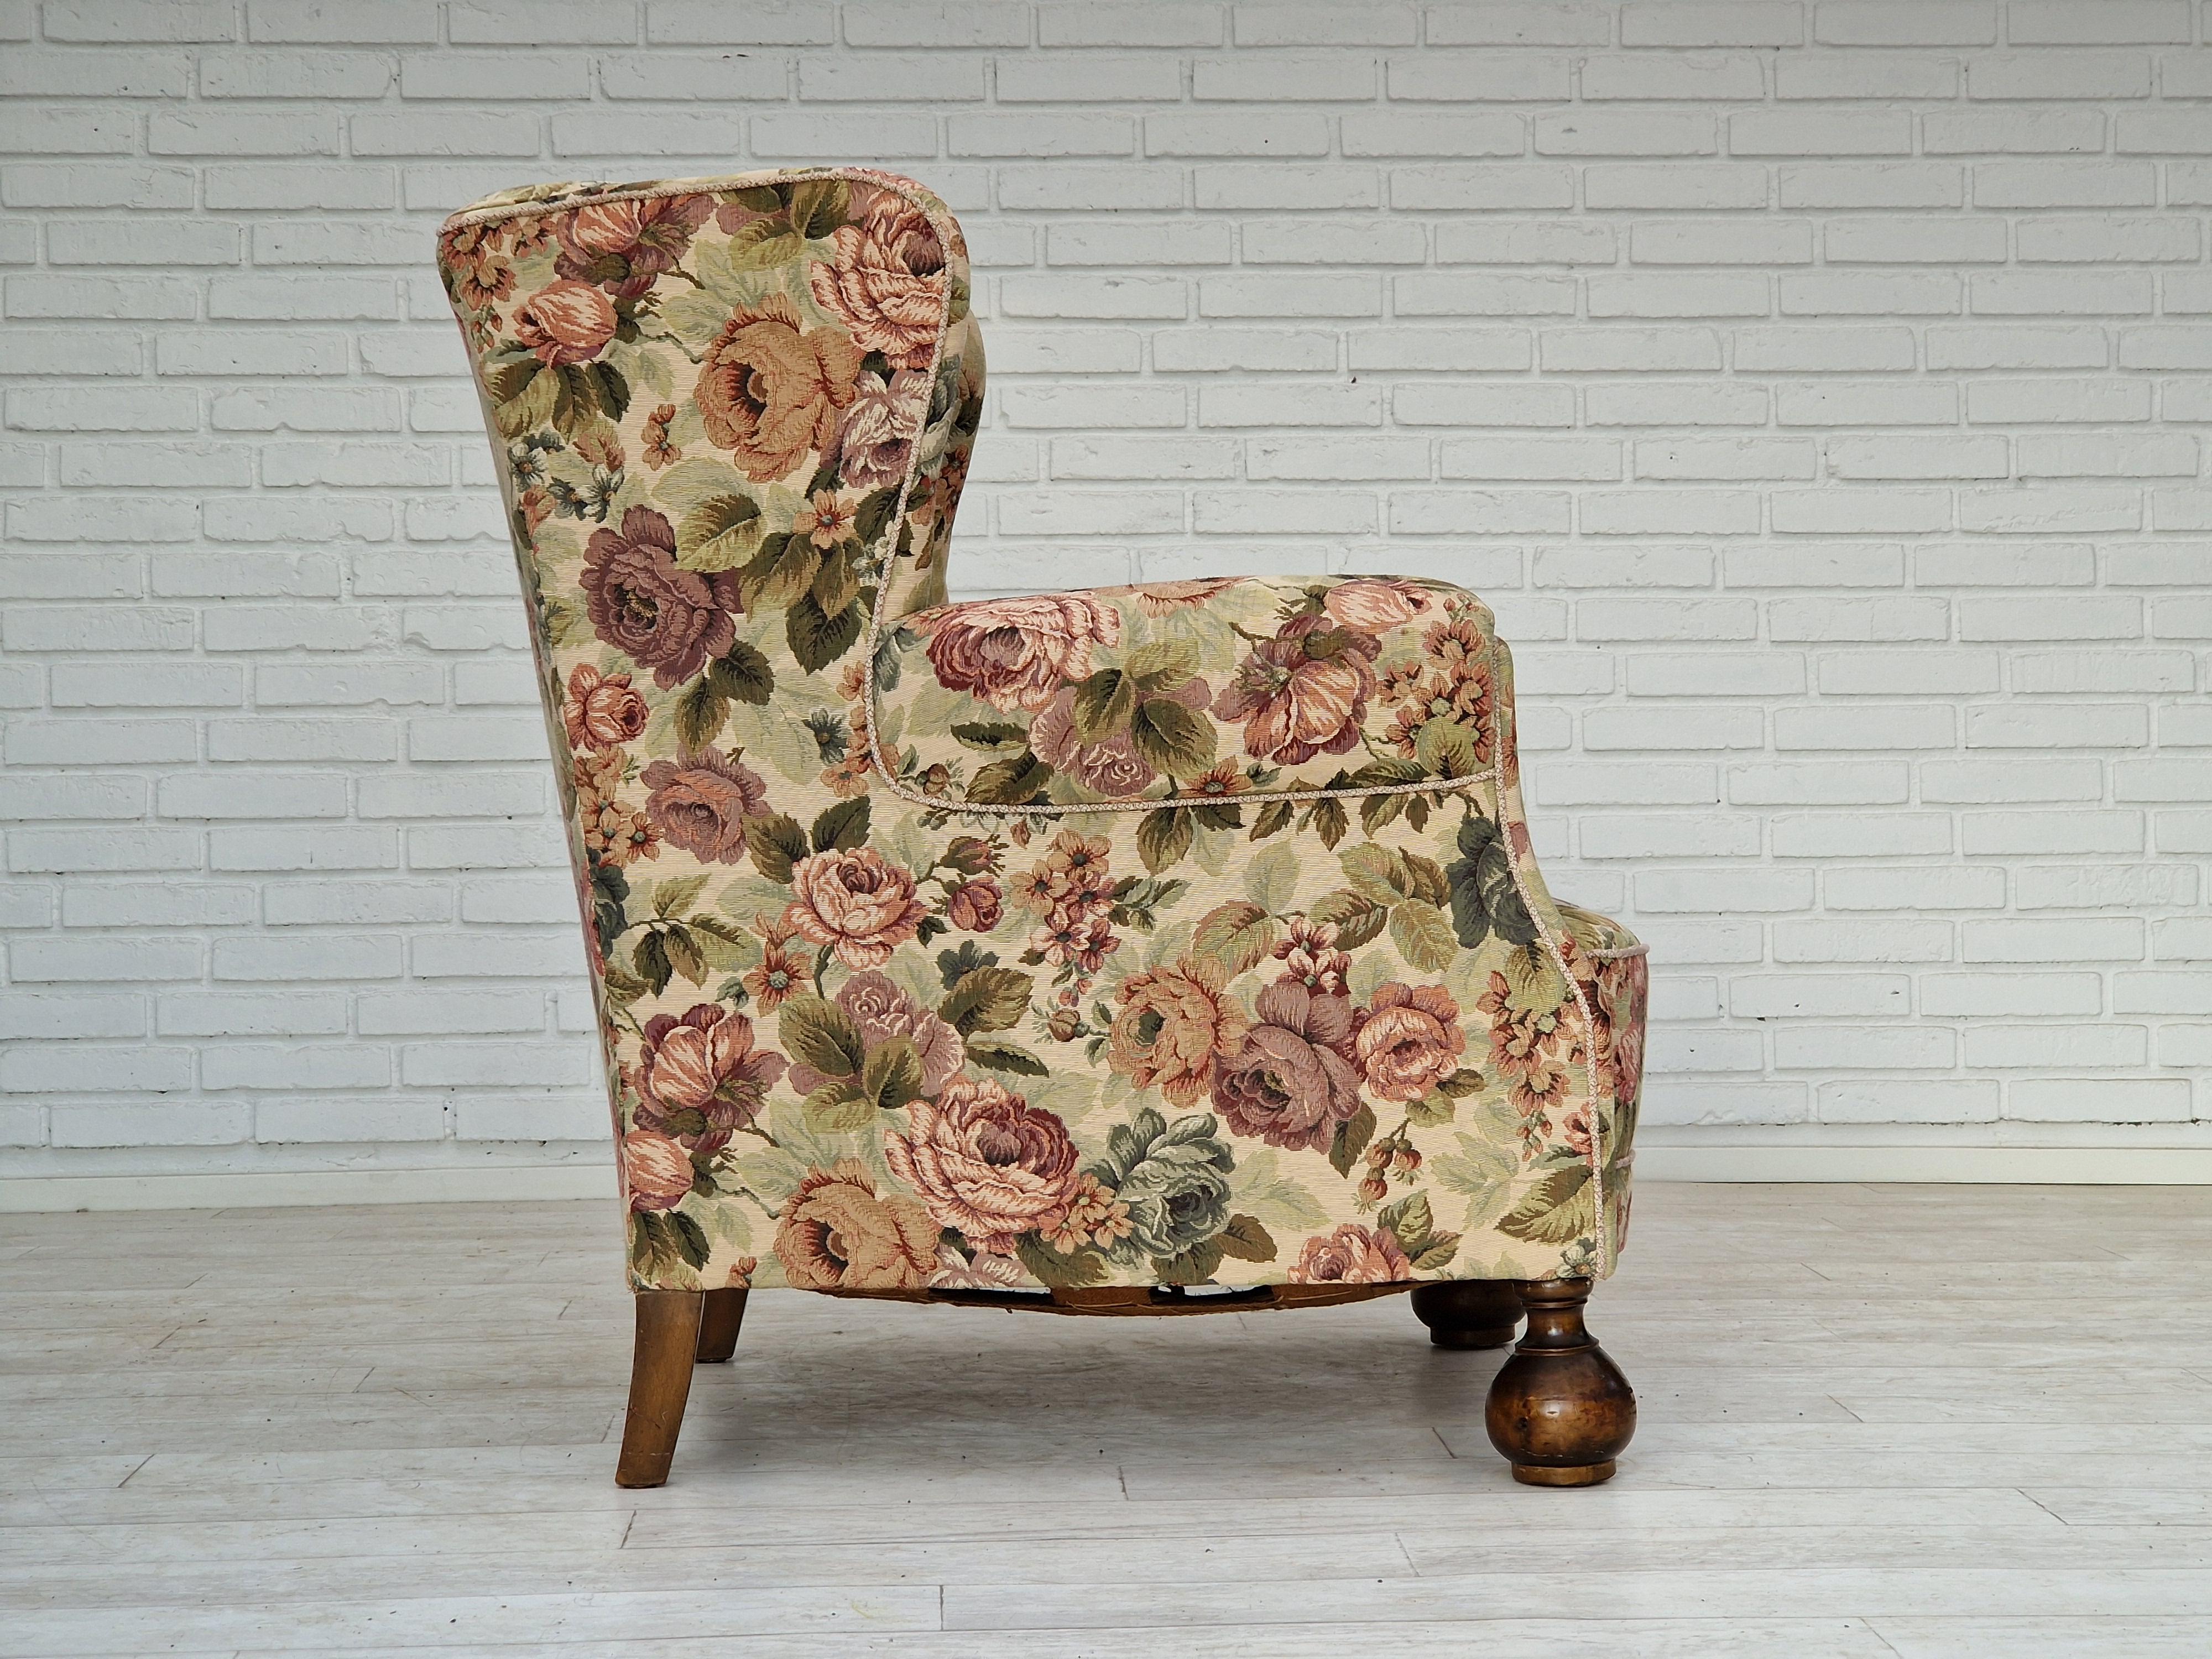 Tissu 1950s, Danish vintage relax chair in 